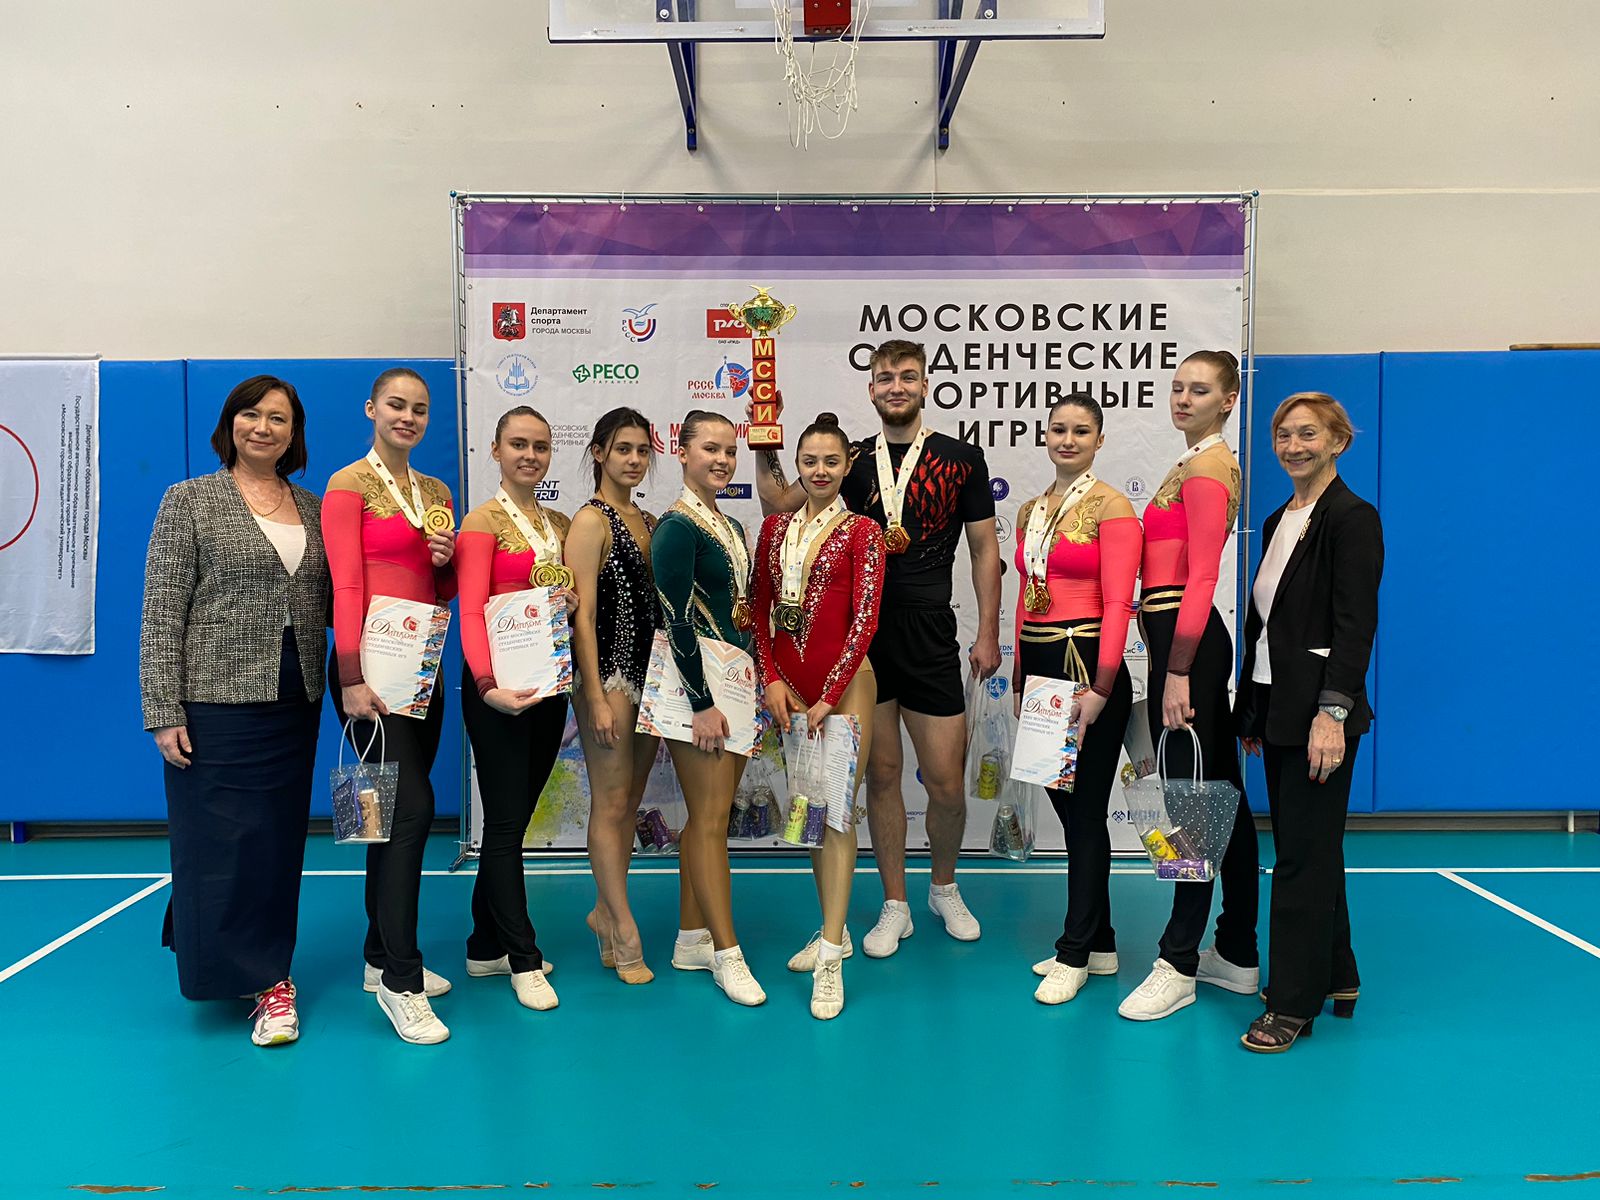 莫斯科市立师范大学代表队成为体育健美操比赛的冠军